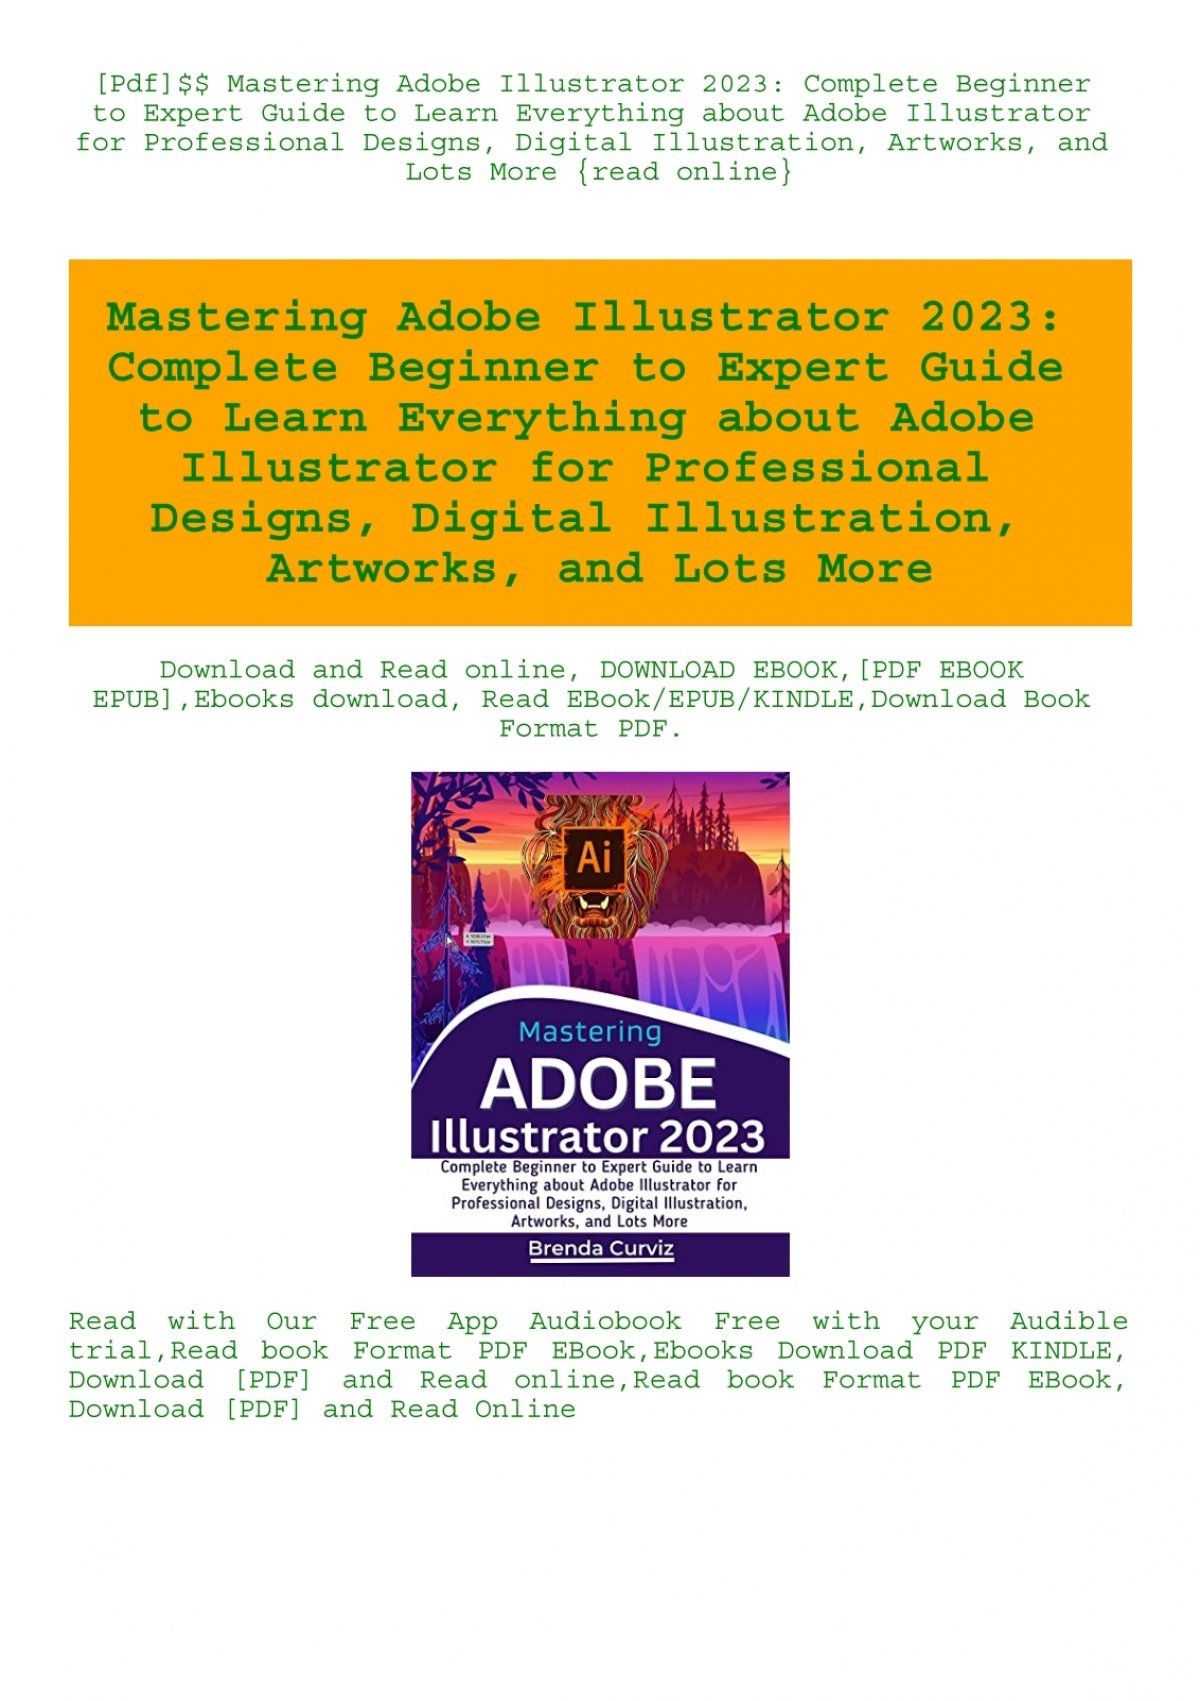 mastering illustrator pdf free download